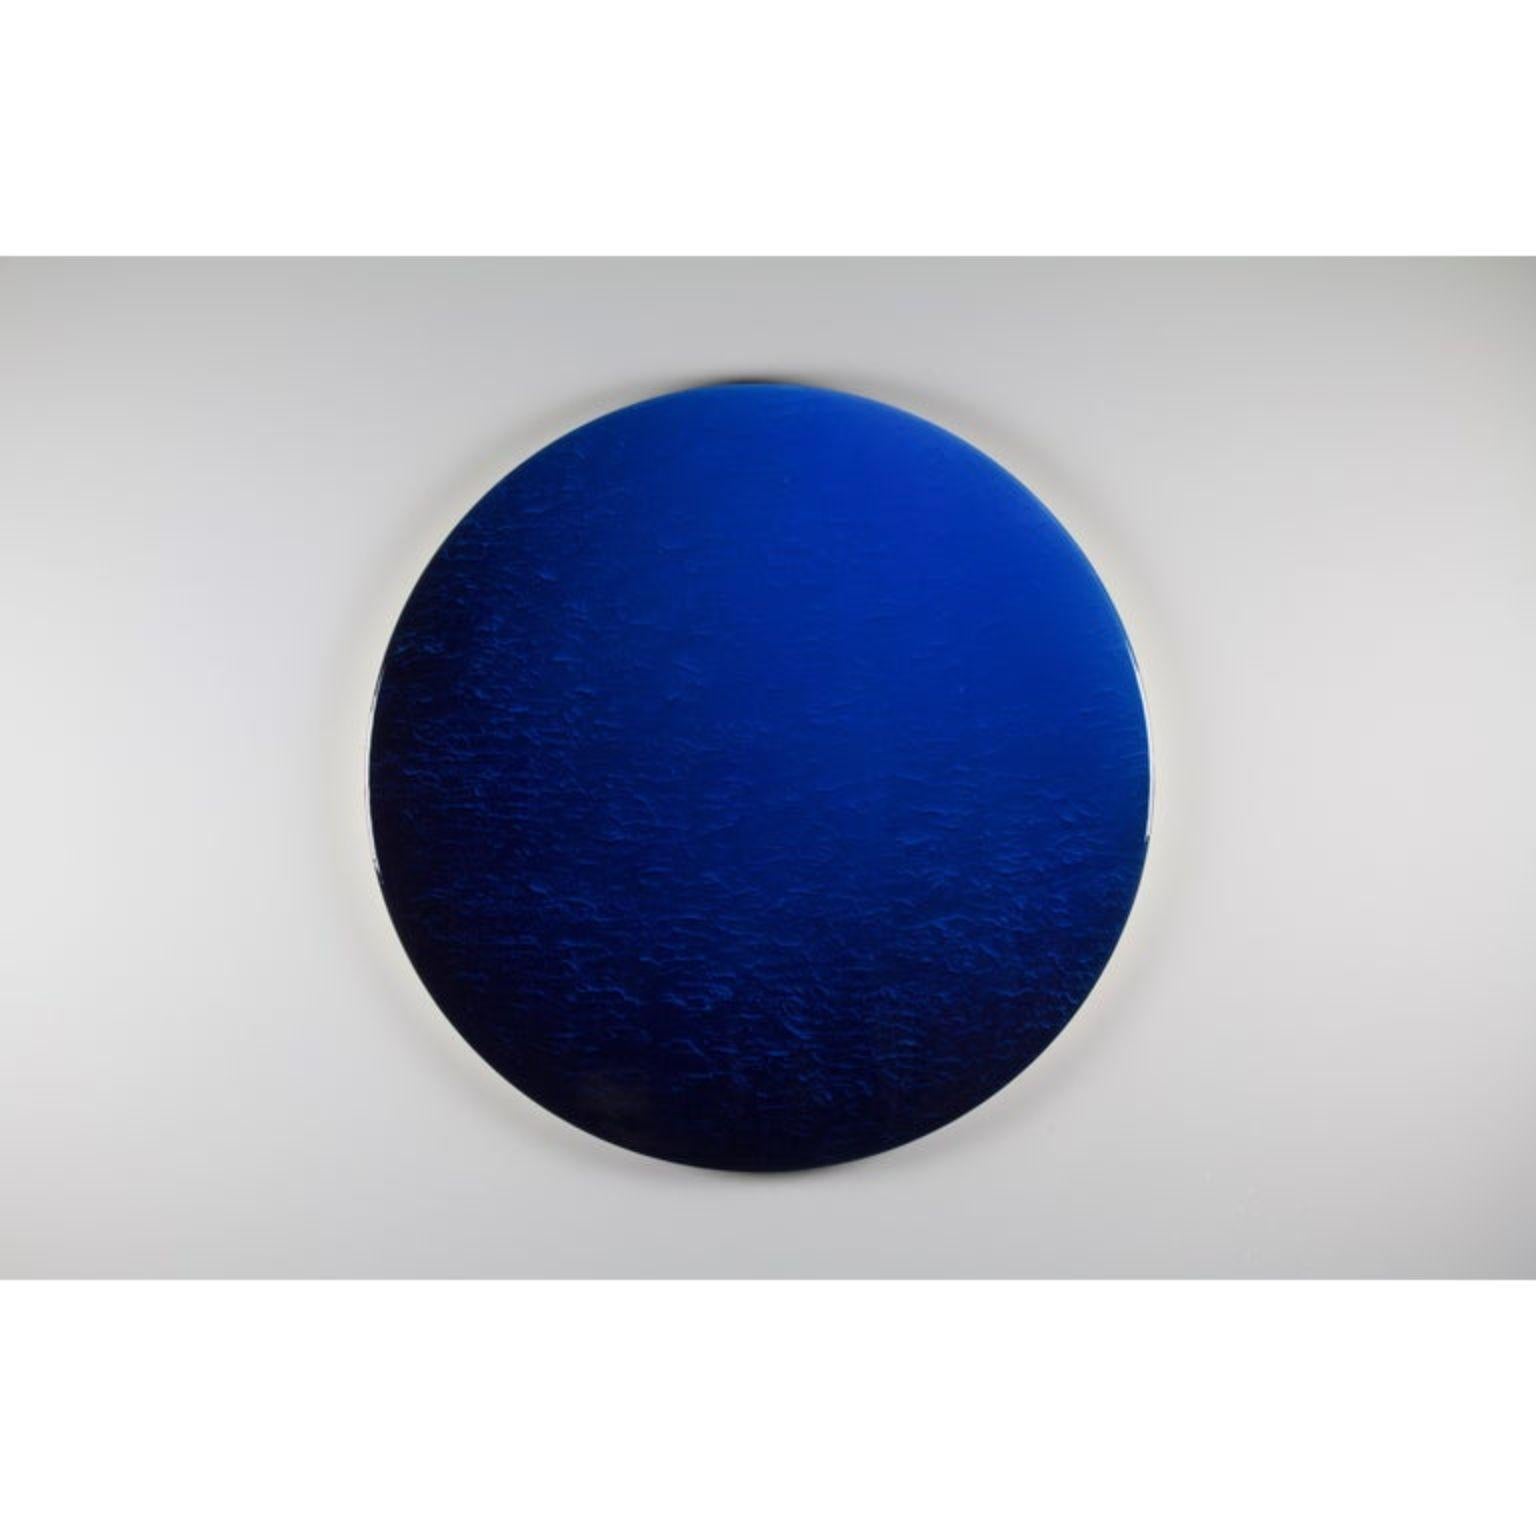 Deux types de personnes : ronde minimaliste par Corine Vanvoorbergen
Dimensions : diamètre 50 cm
Matériaux : Laiton, bois, pigments naturels, époxy et acrylique.

Il y a deux sortes de personnes. Ceux qui voient la nuit arriver et ceux qui voient le